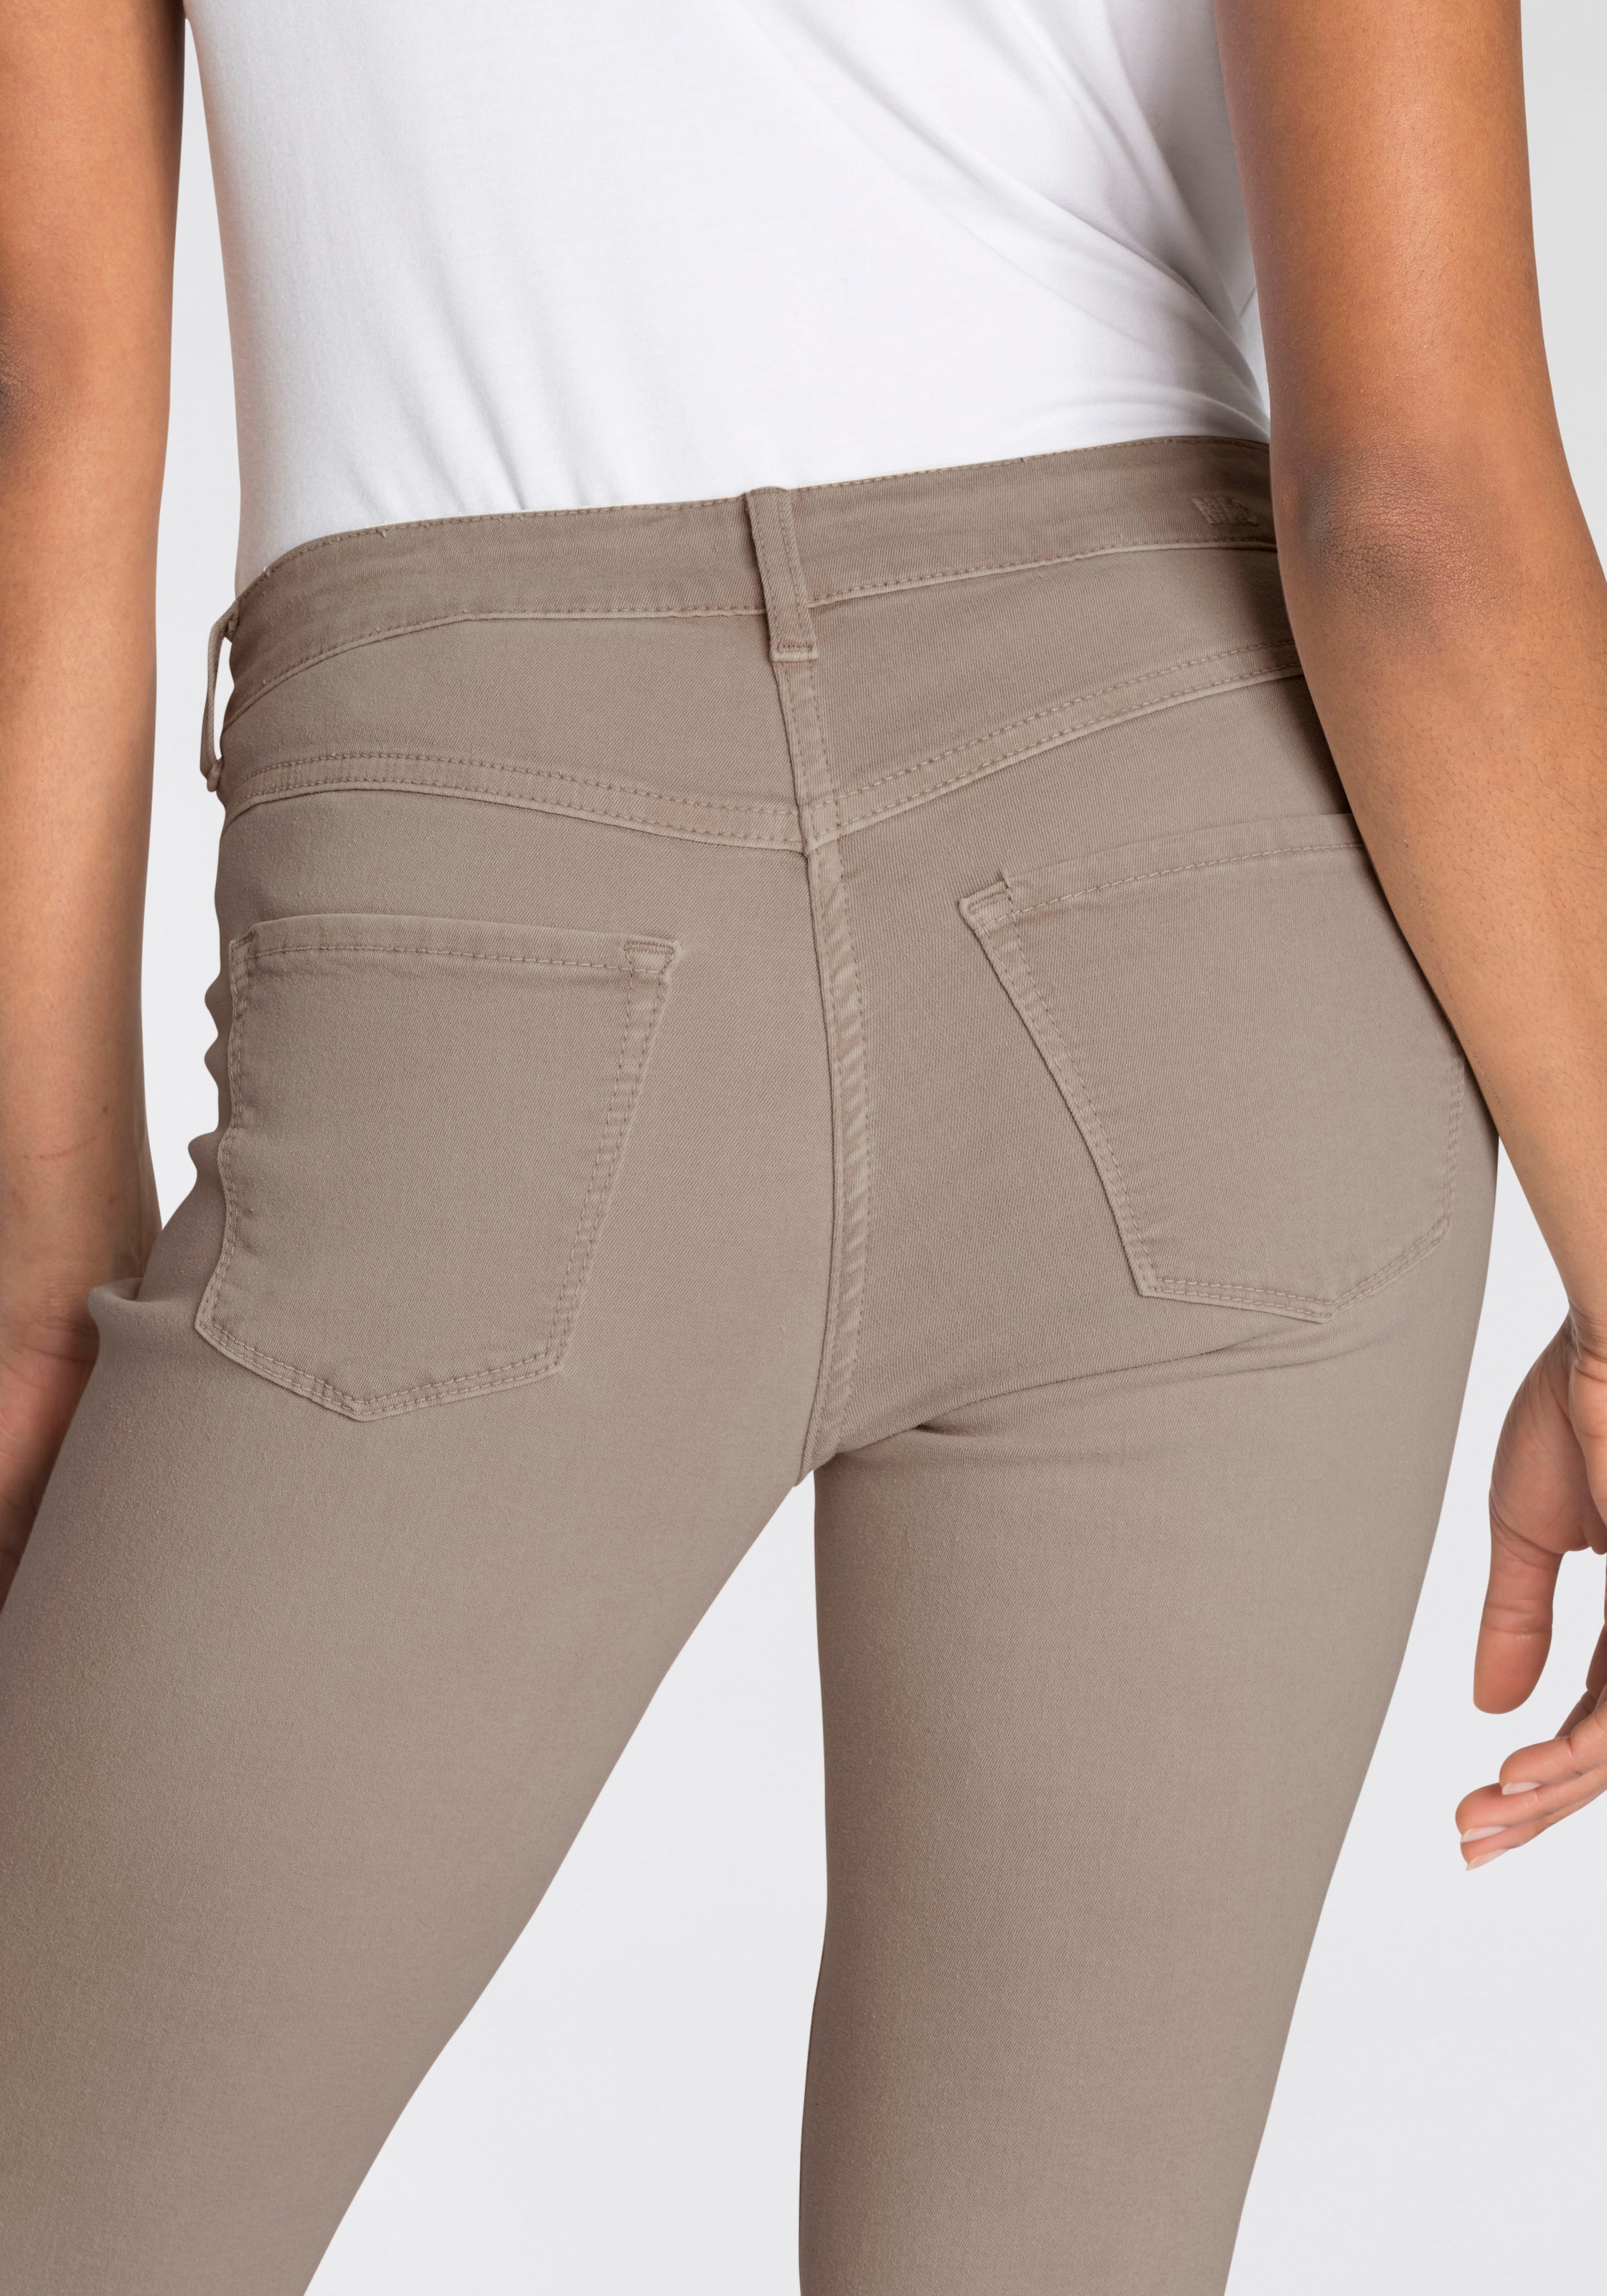 den bequem MAC Power-Stretch Tag sitzt Qualität ganzen kaufen »Hiperstretch-Skinny«, Skinny-fit-Jeans